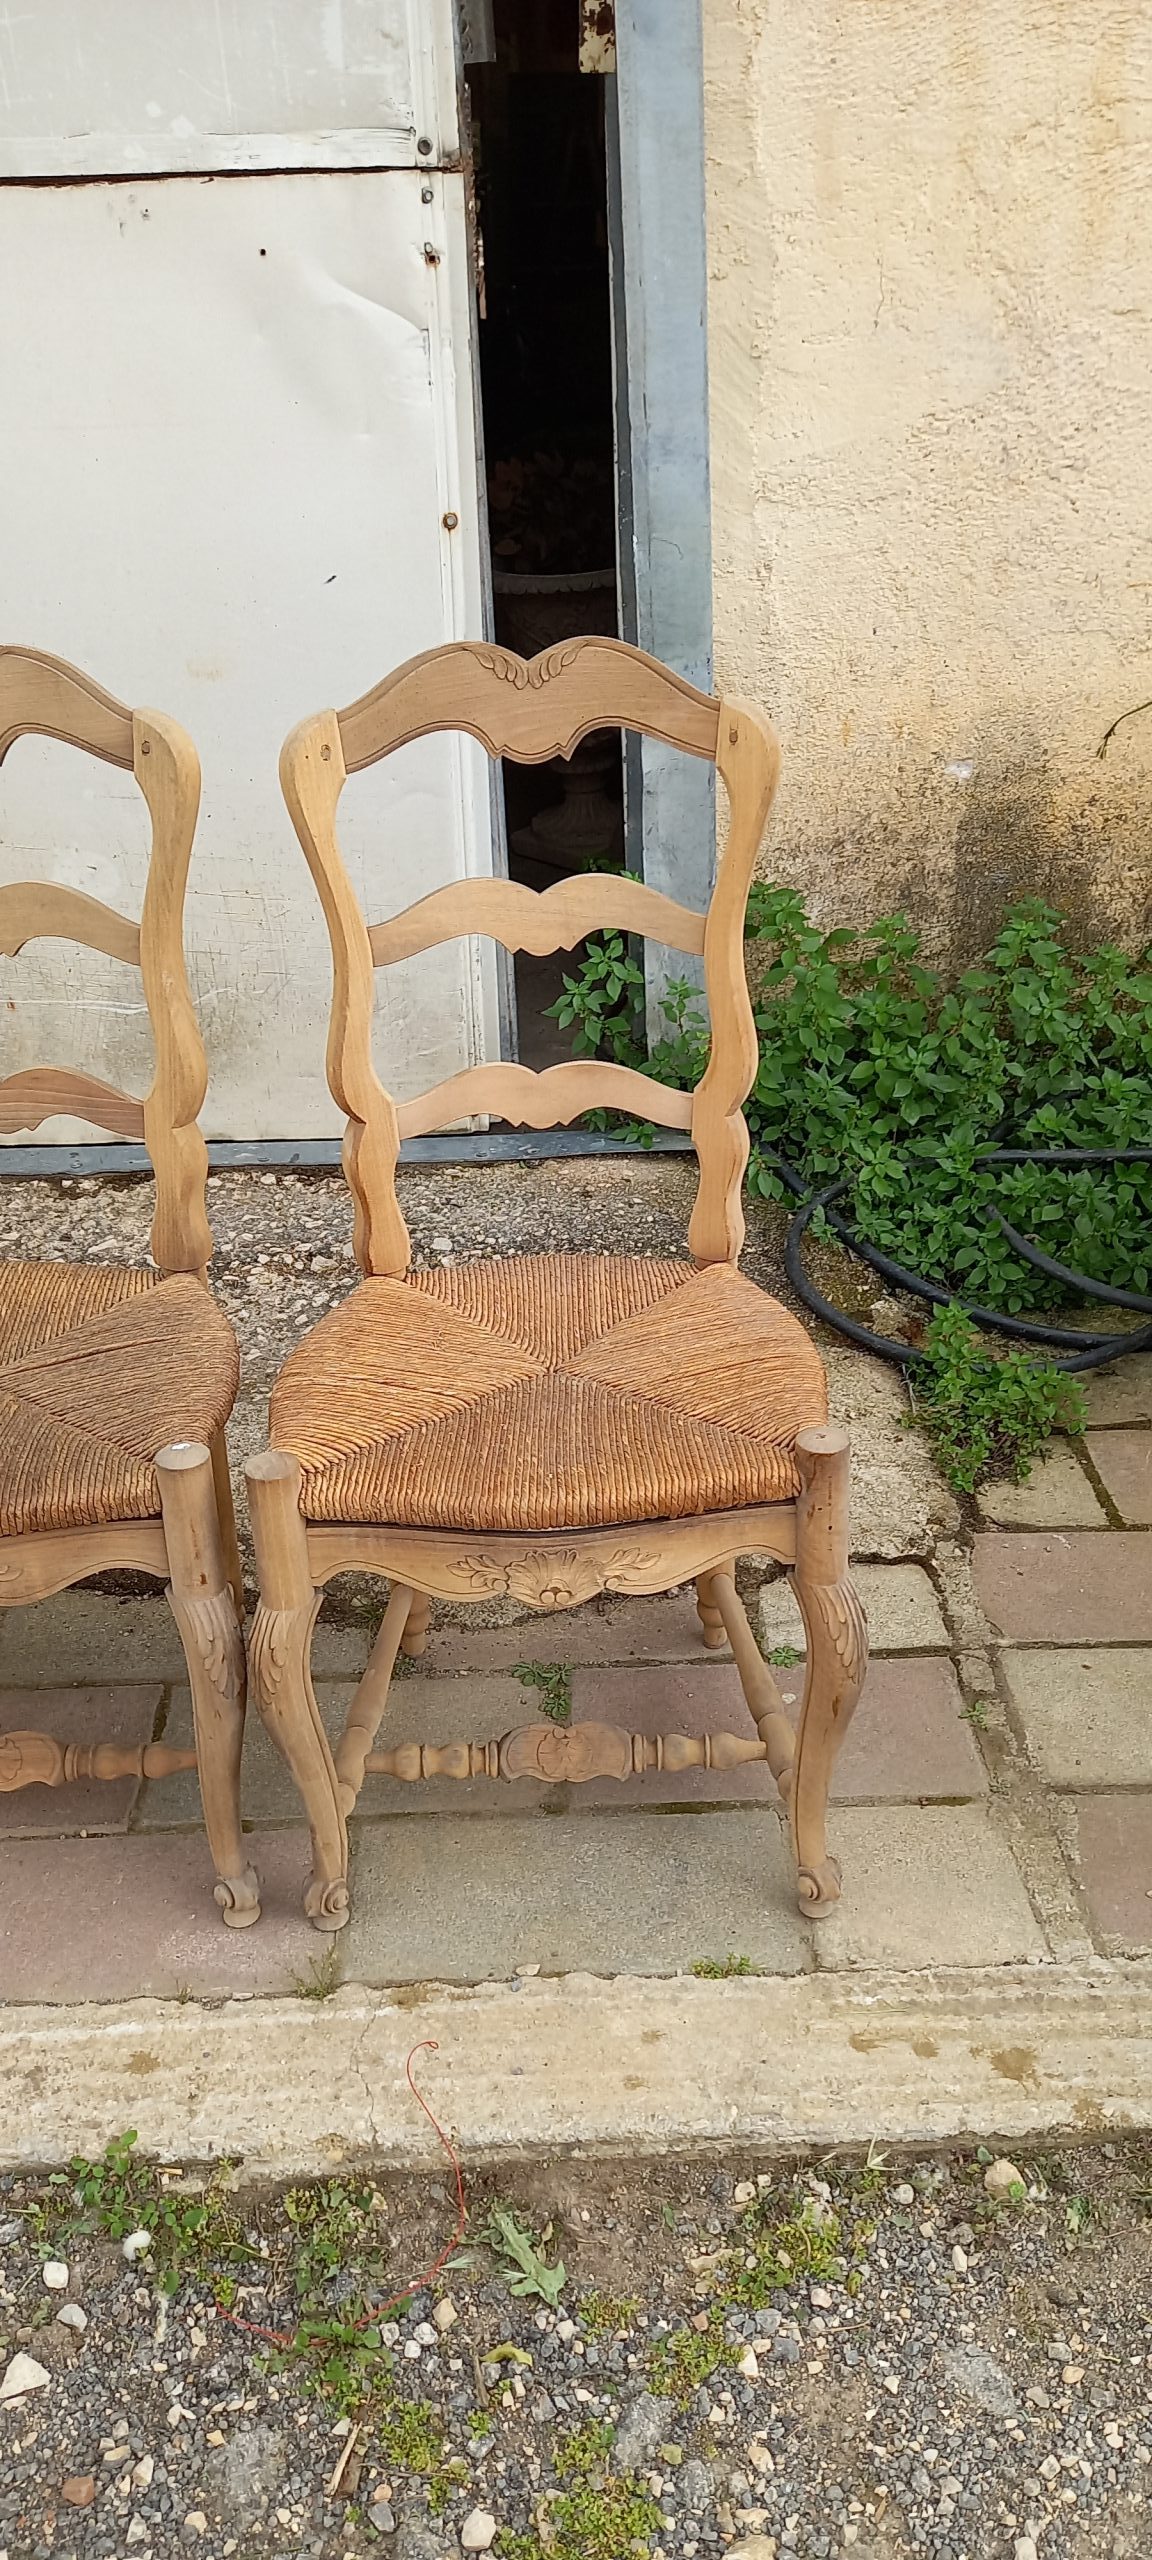 σετ από έξι ξύλινες καρέκλες ,χειροποίητες με ψάθινο κάθισμα ,χωριάτικο στυλ, με σκαλίσματα στην πλάτη και στα πόδια ,σε φυσικο χρωμα ξυλου